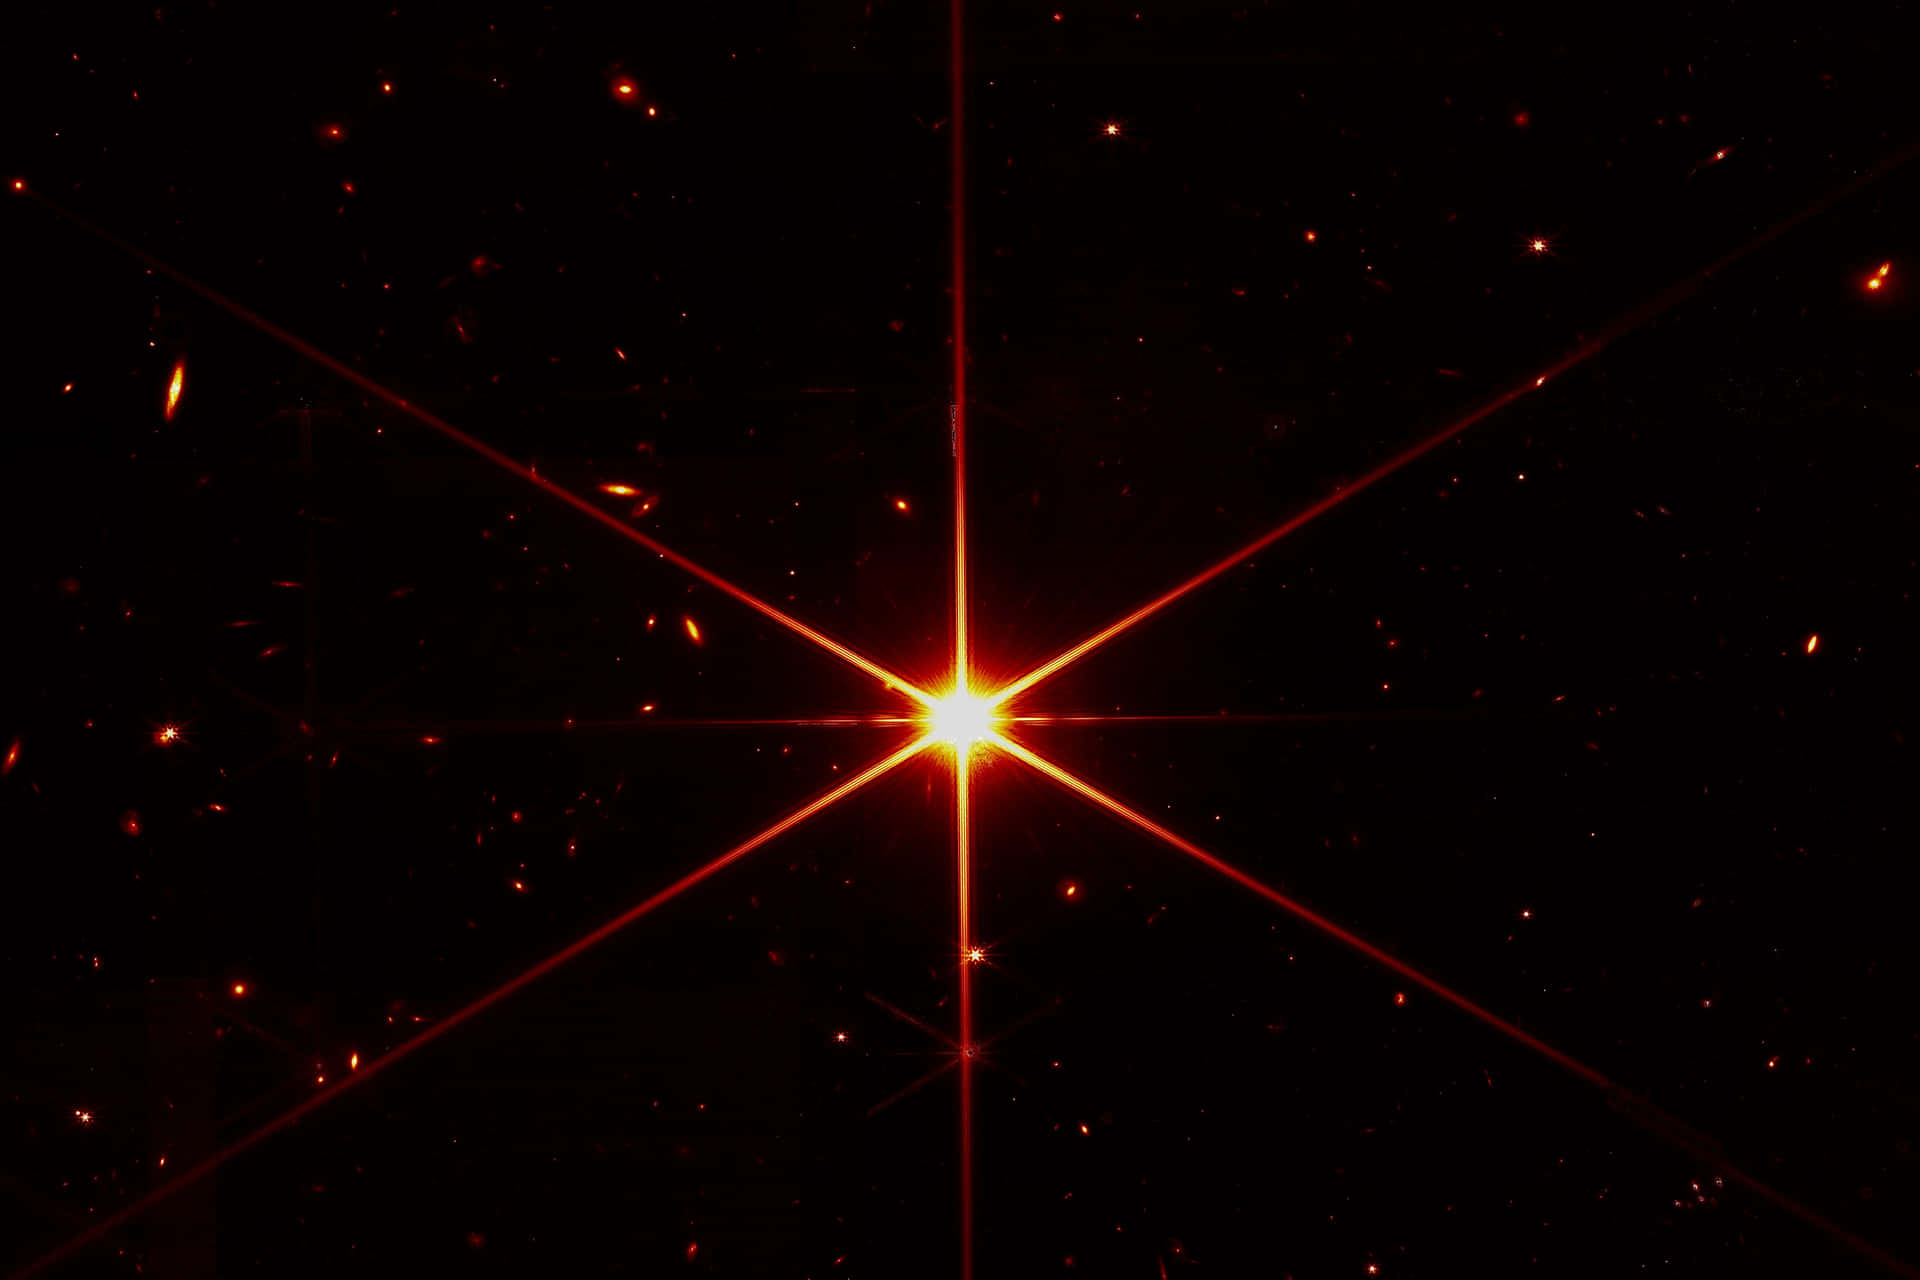 Estrellasen El Espacio: Imagen Del Telescopio De La Nasa.